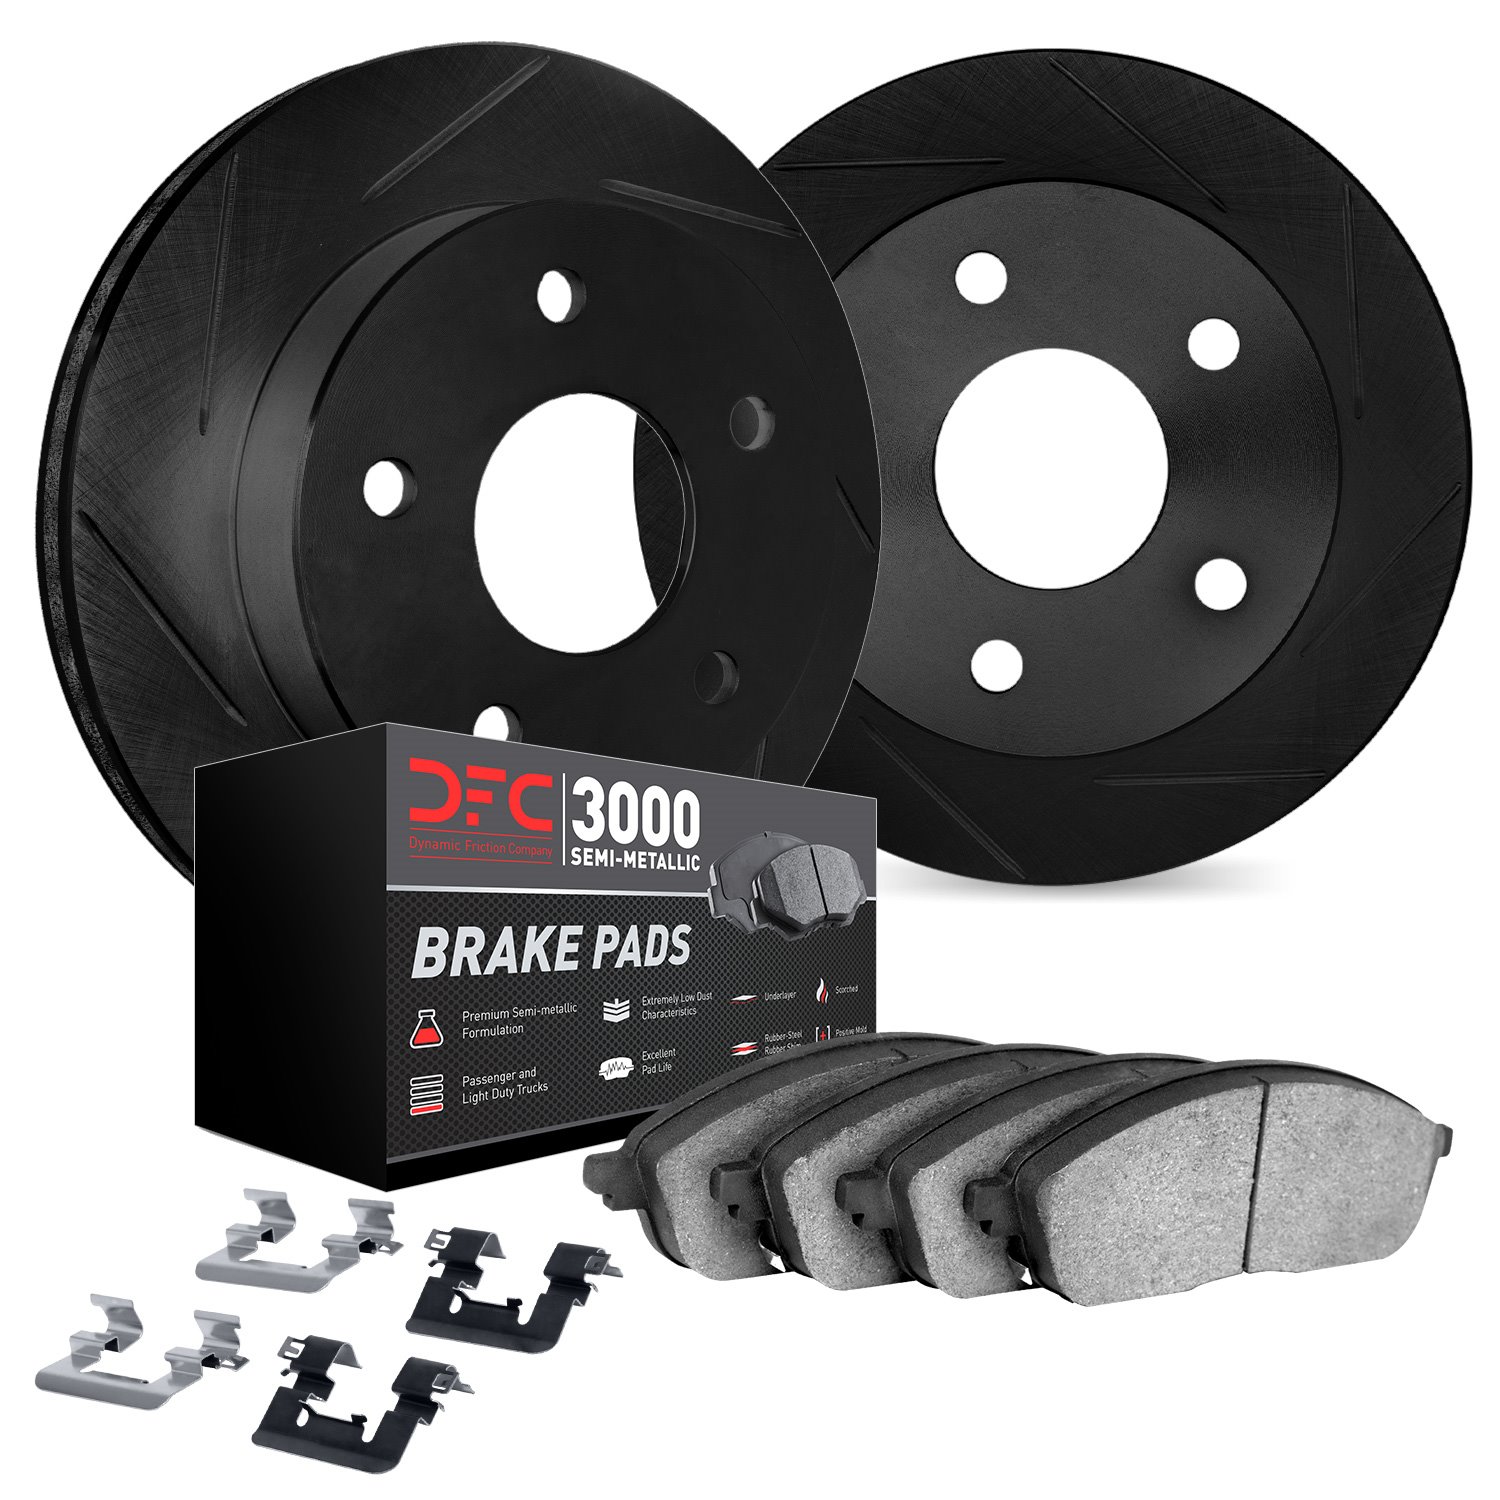 3112-63146 Slotted Brake Rotors with 3000-Series Semi-Metallic Brake Pads Kit & Hardware [Black], 2012-2018 Mercedes-Benz, Posit